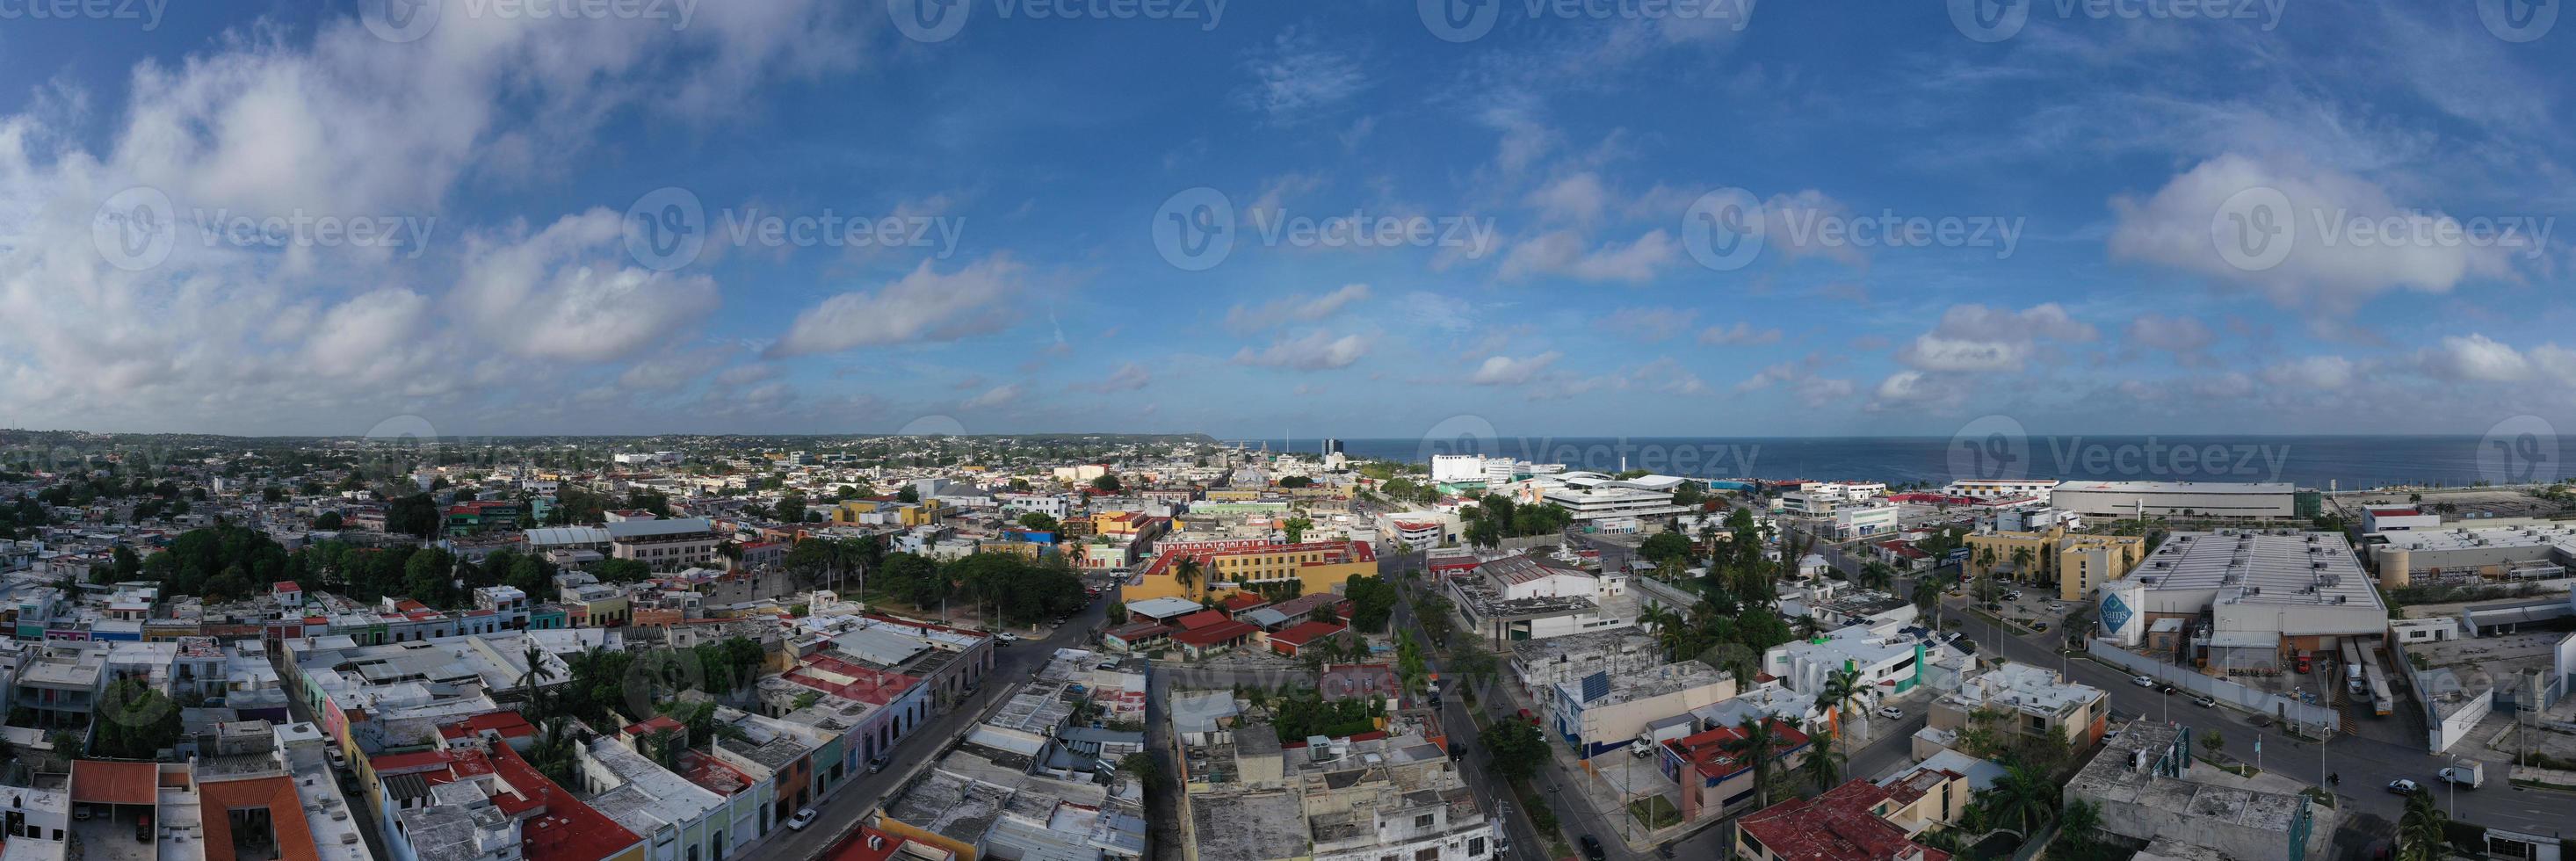 vista panorâmica do horizonte de campeche, capital do estado de campeche, patrimônio mundial da humanidade no méxico. foto